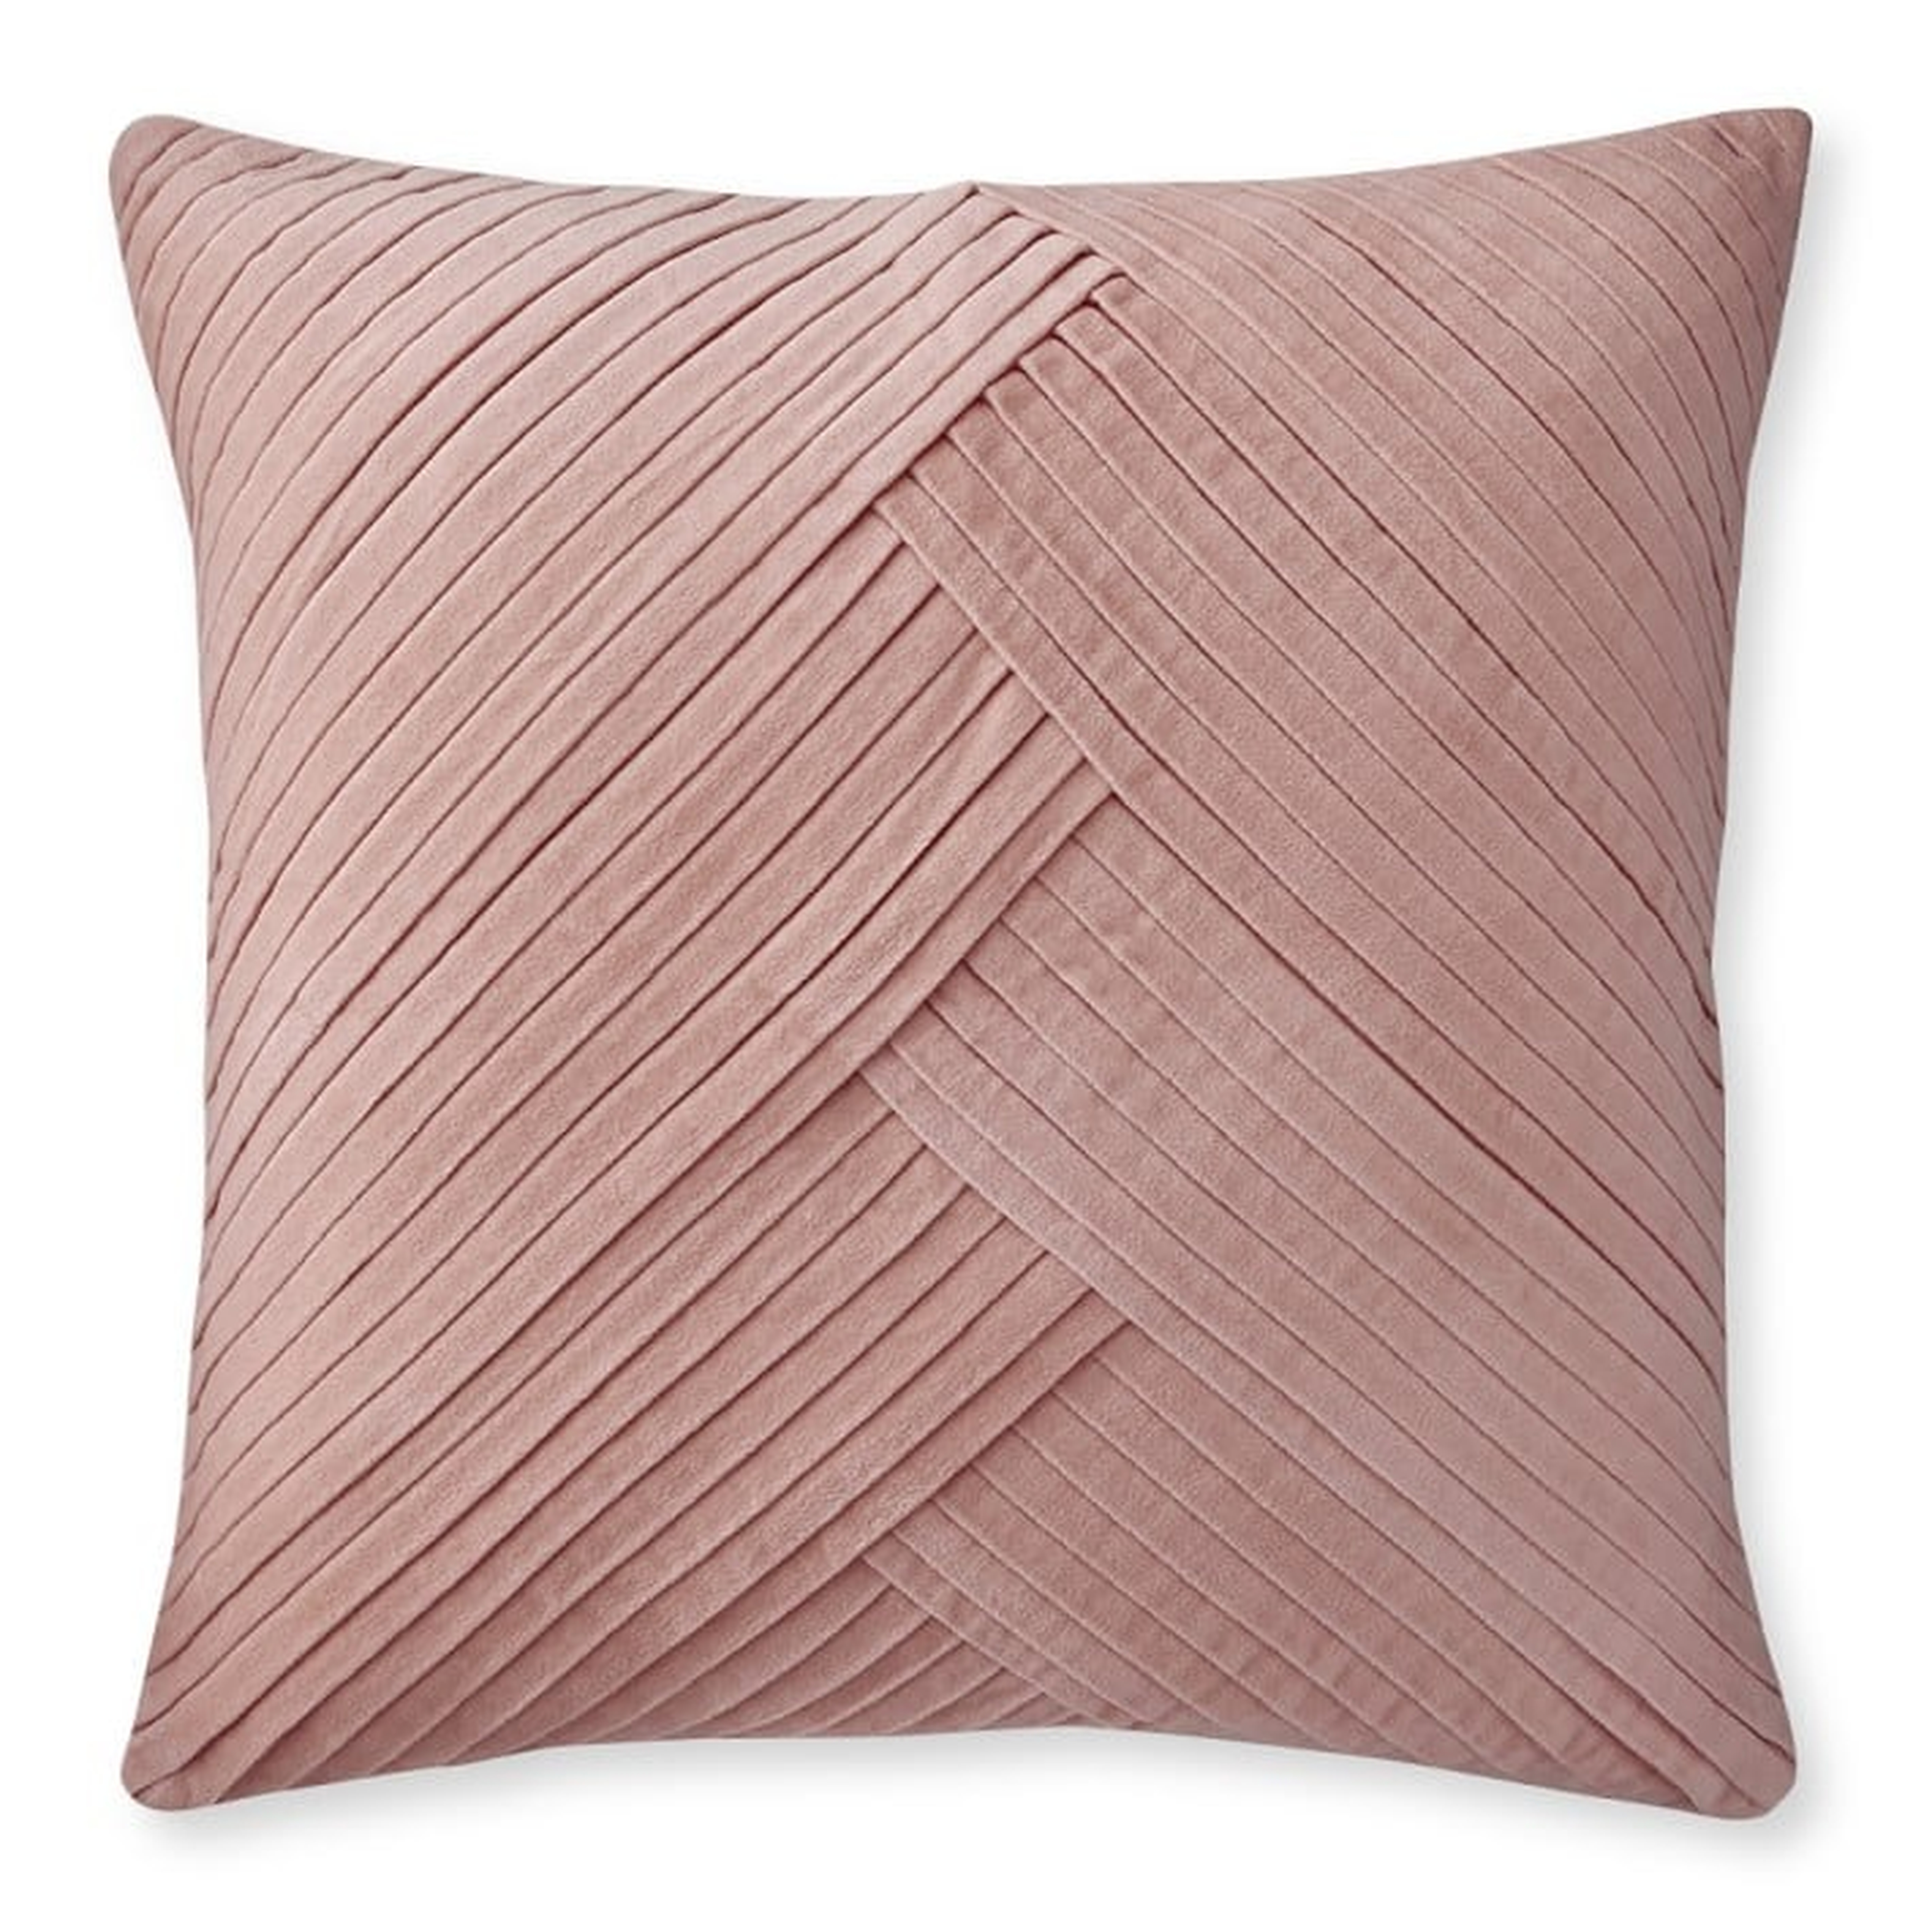 Pleated Velvet Pillow Cover, 22" X 22", Blush - Williams Sonoma